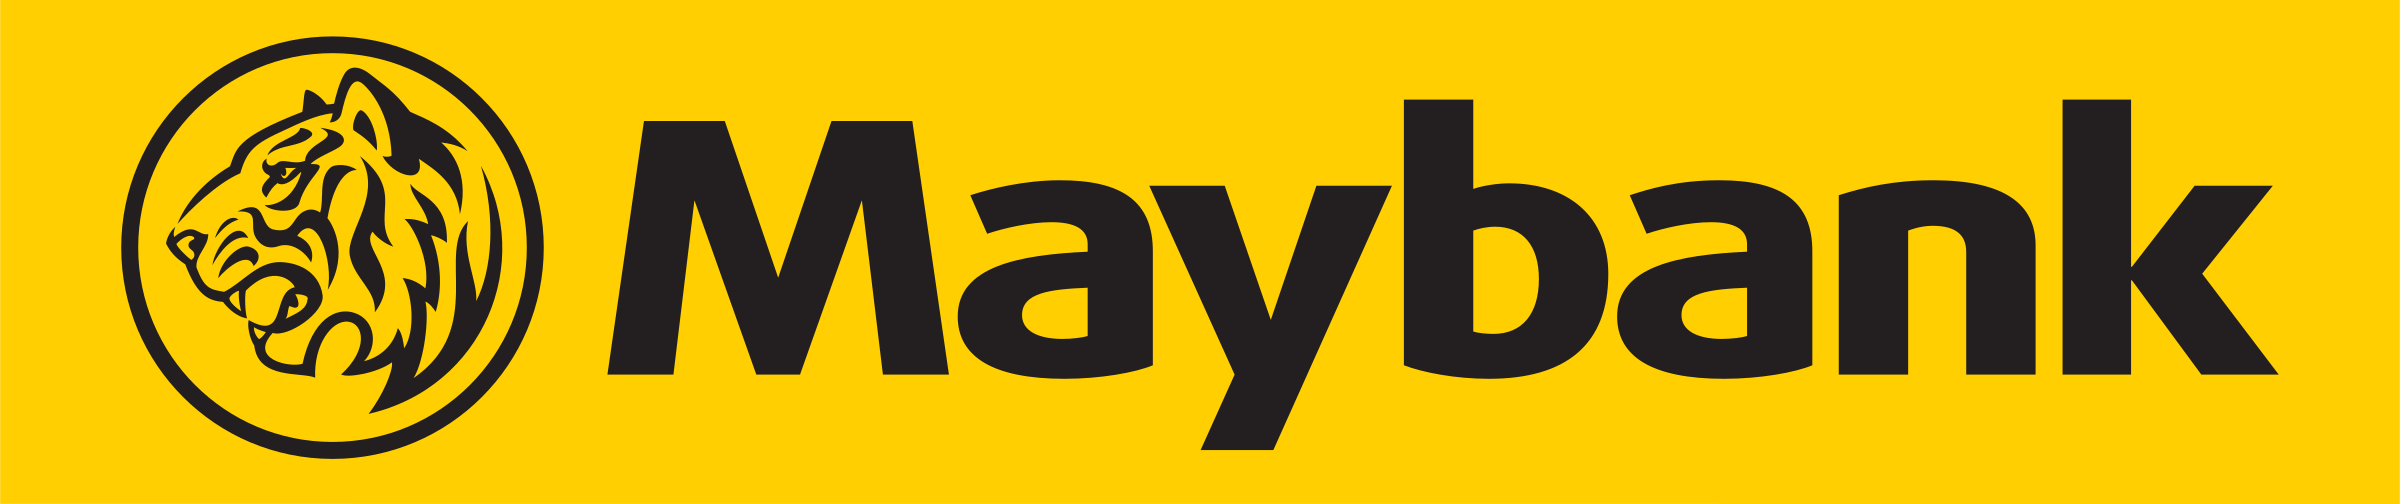 bank maybank logo